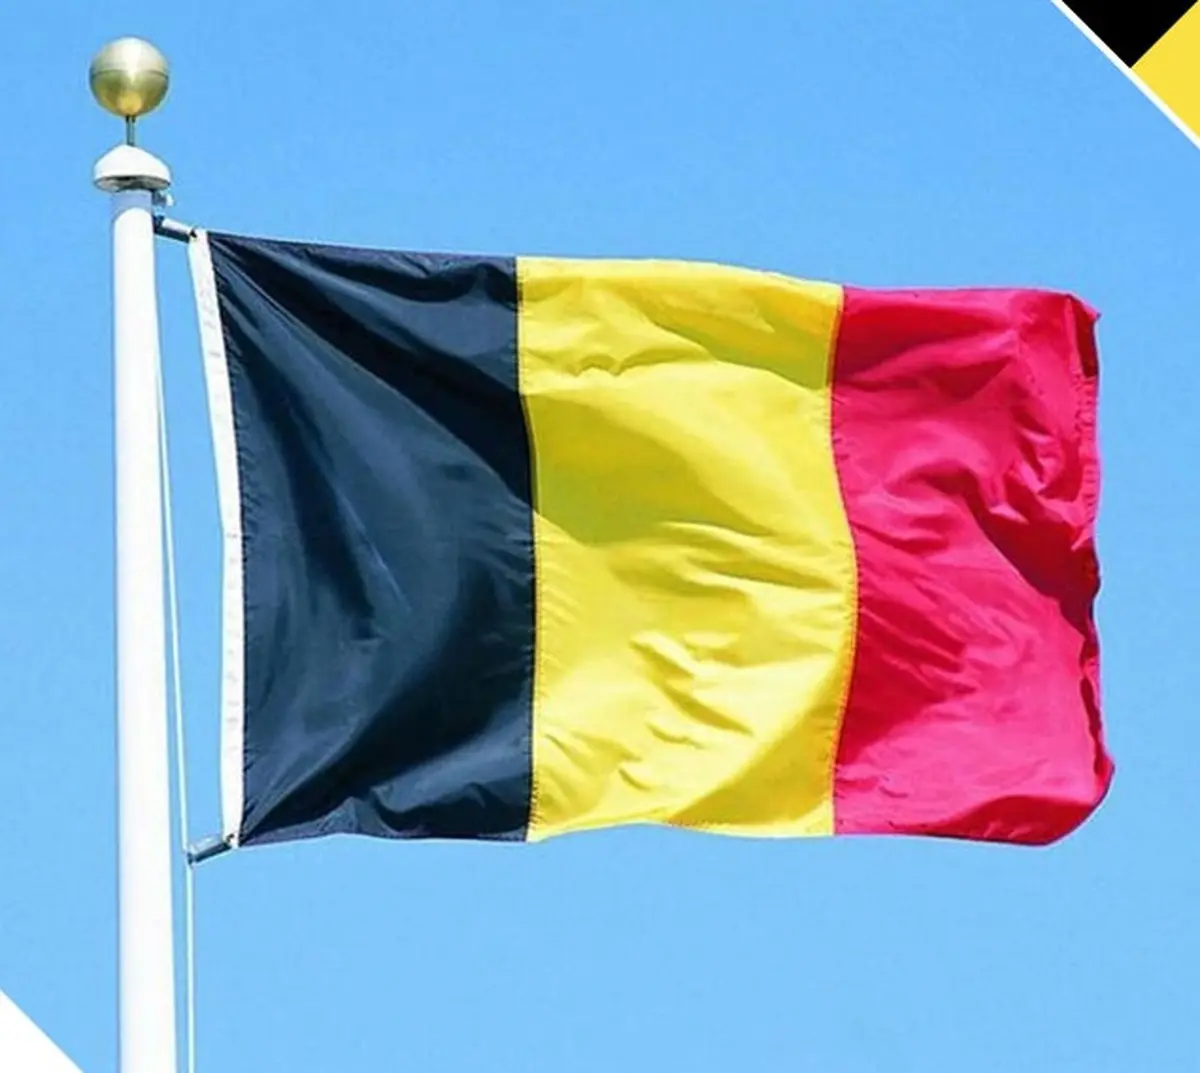 وزارت امور خارجه بلژیک: ما ازاحترام به حقوق بشر  دفاع می کنیم